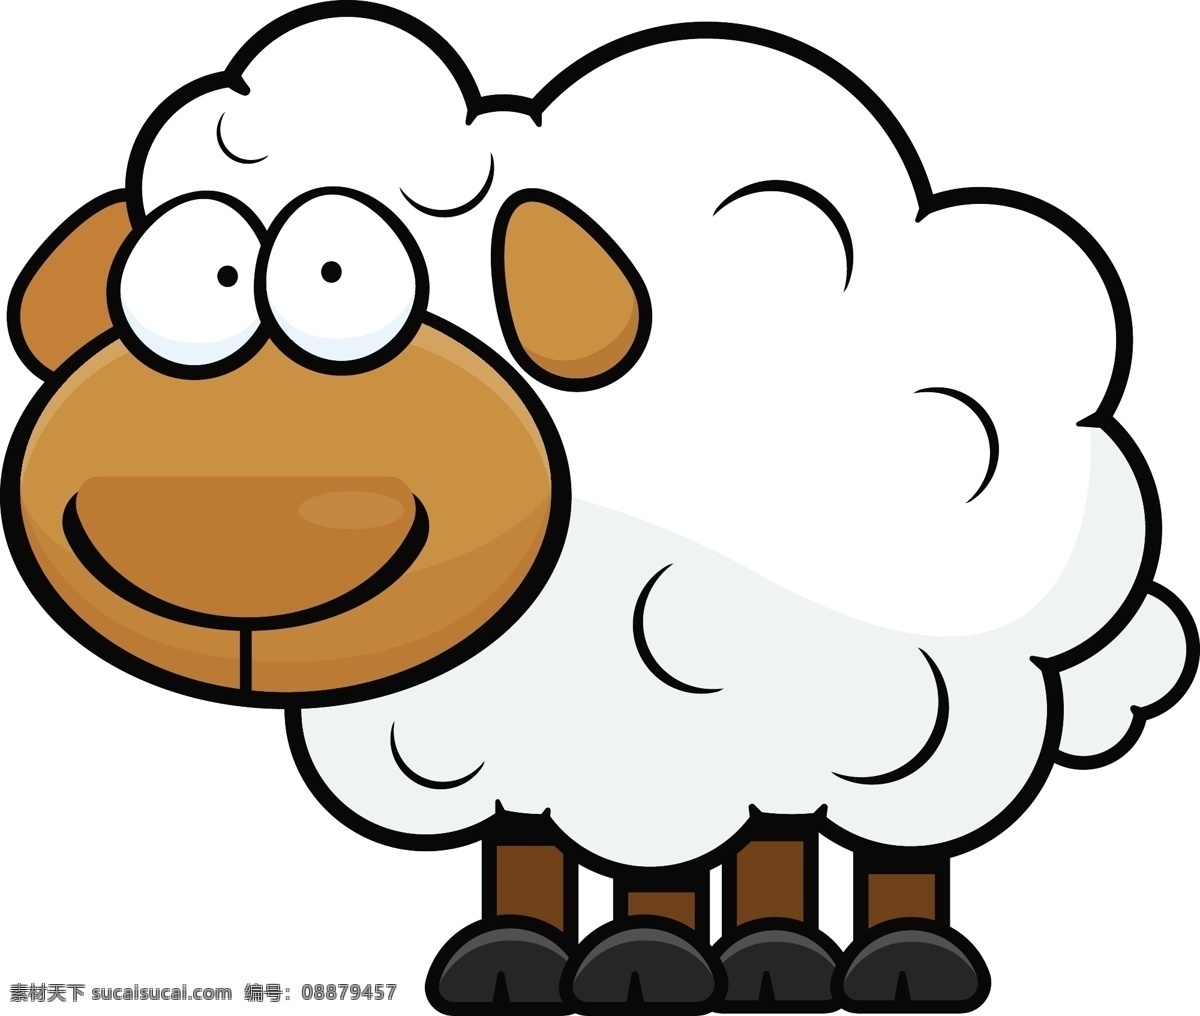 羊年素材 卡通羊 矢量羊 动物 矢量动物 2015 绵羊 手绘 羊年设计元素 卡通动物 动物世界 卡通设计 家禽家畜 生物世界 节日庆祝 文化艺术